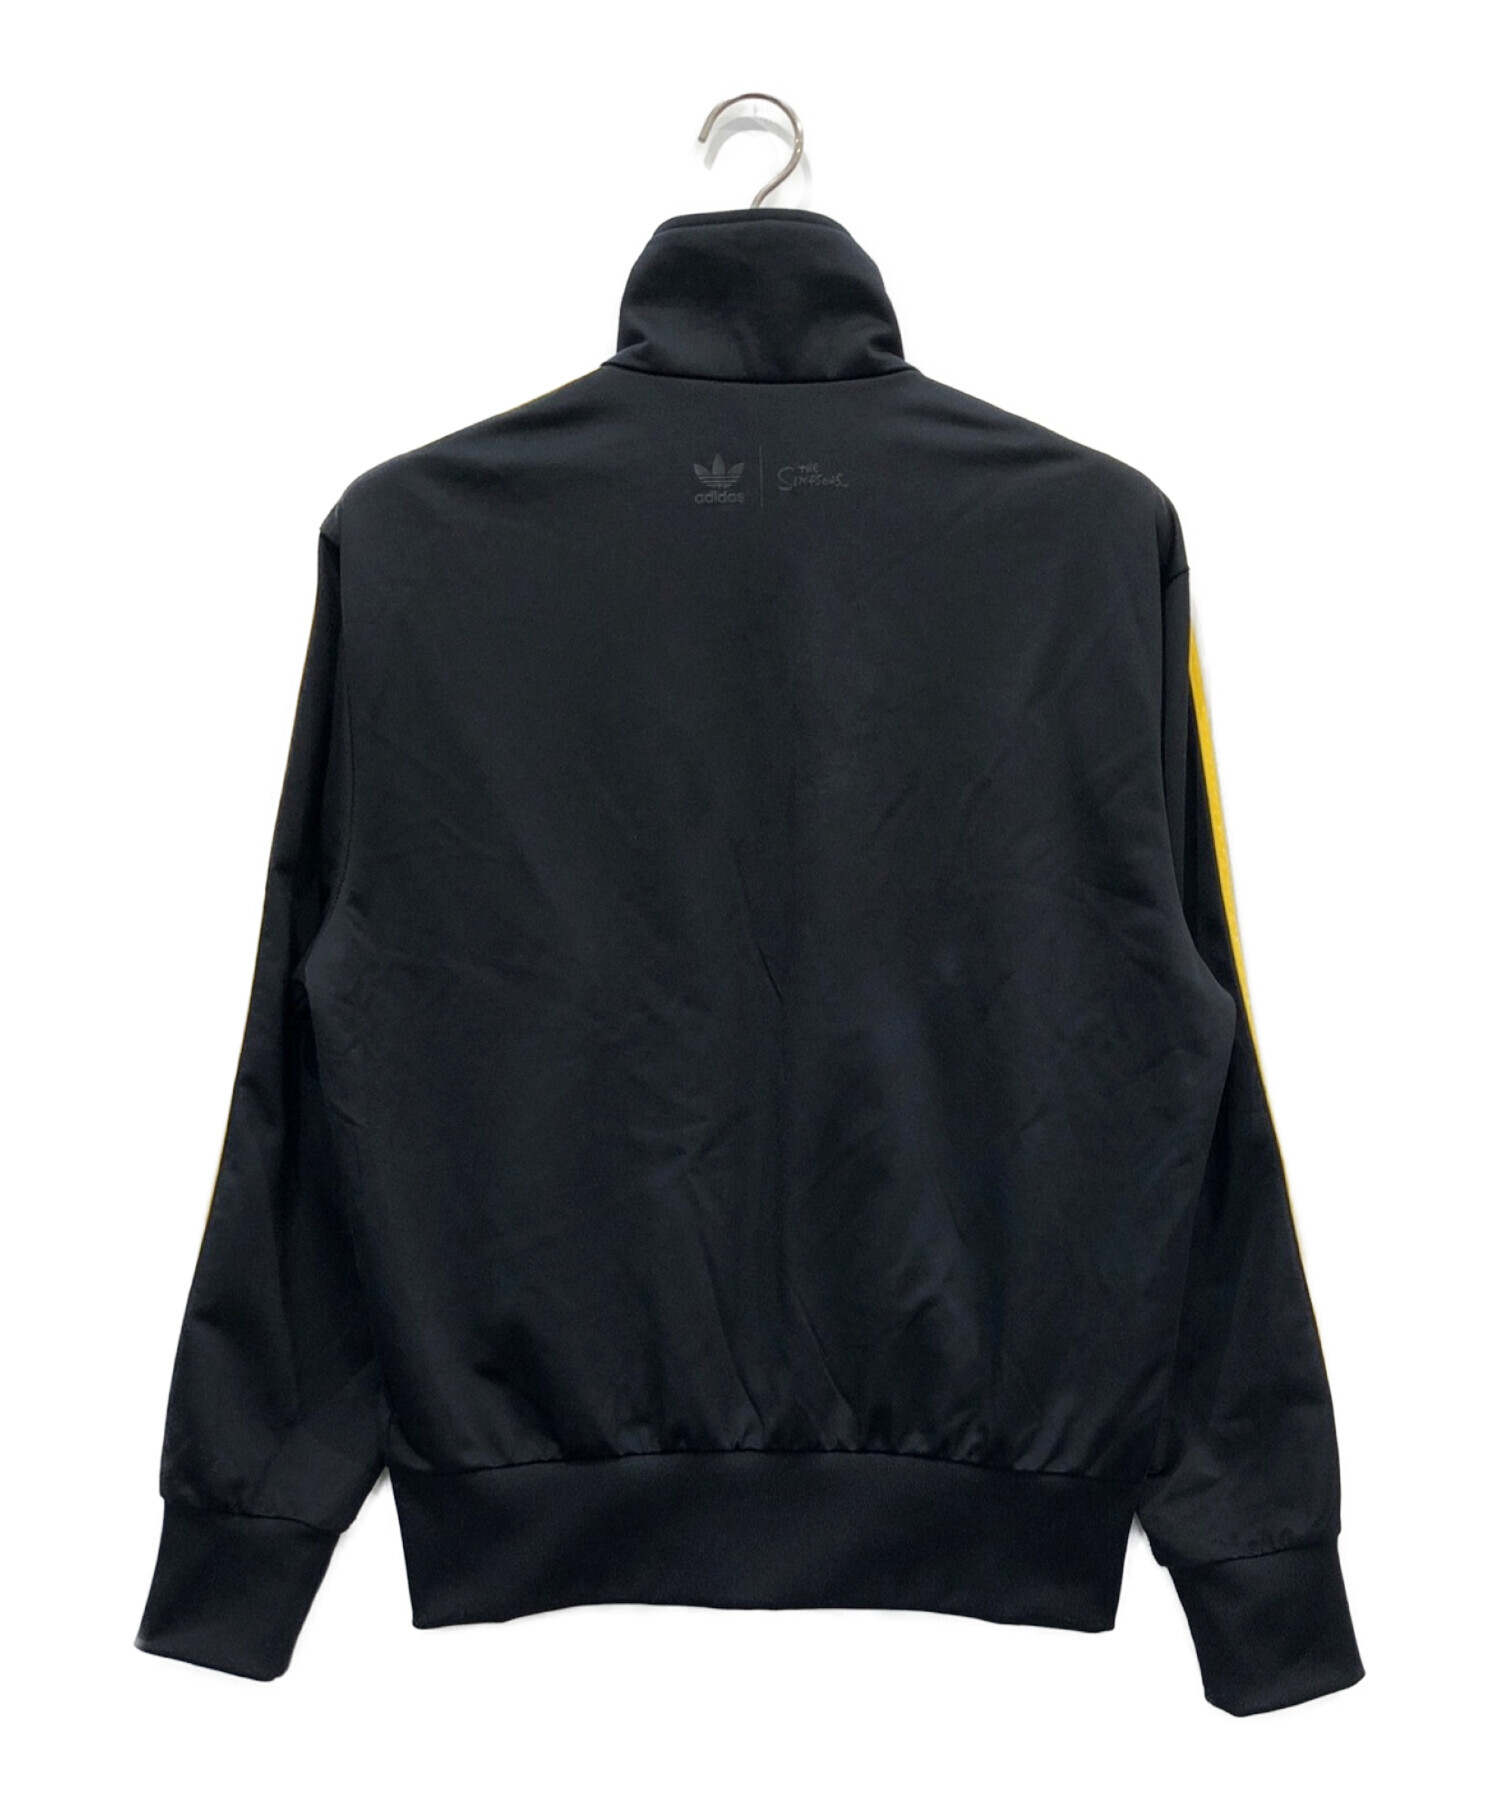 adidas×The Simpsons (アディダス×ザシンプソンズ) トラックジャケット ブラック サイズ:M